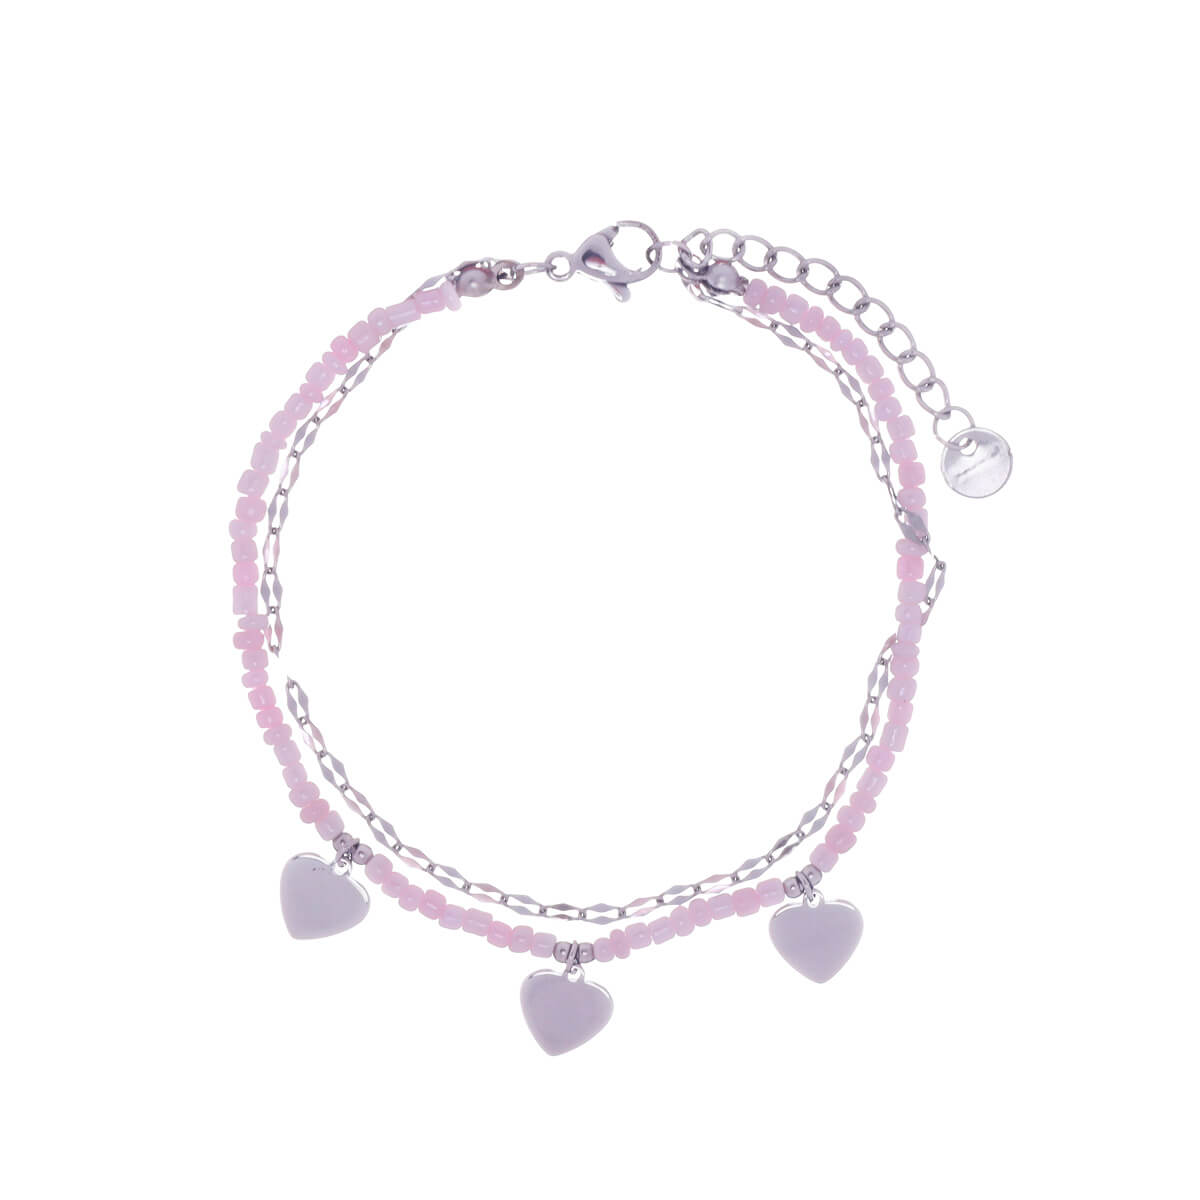 Steel heart bracelet with beads (steel 316L)